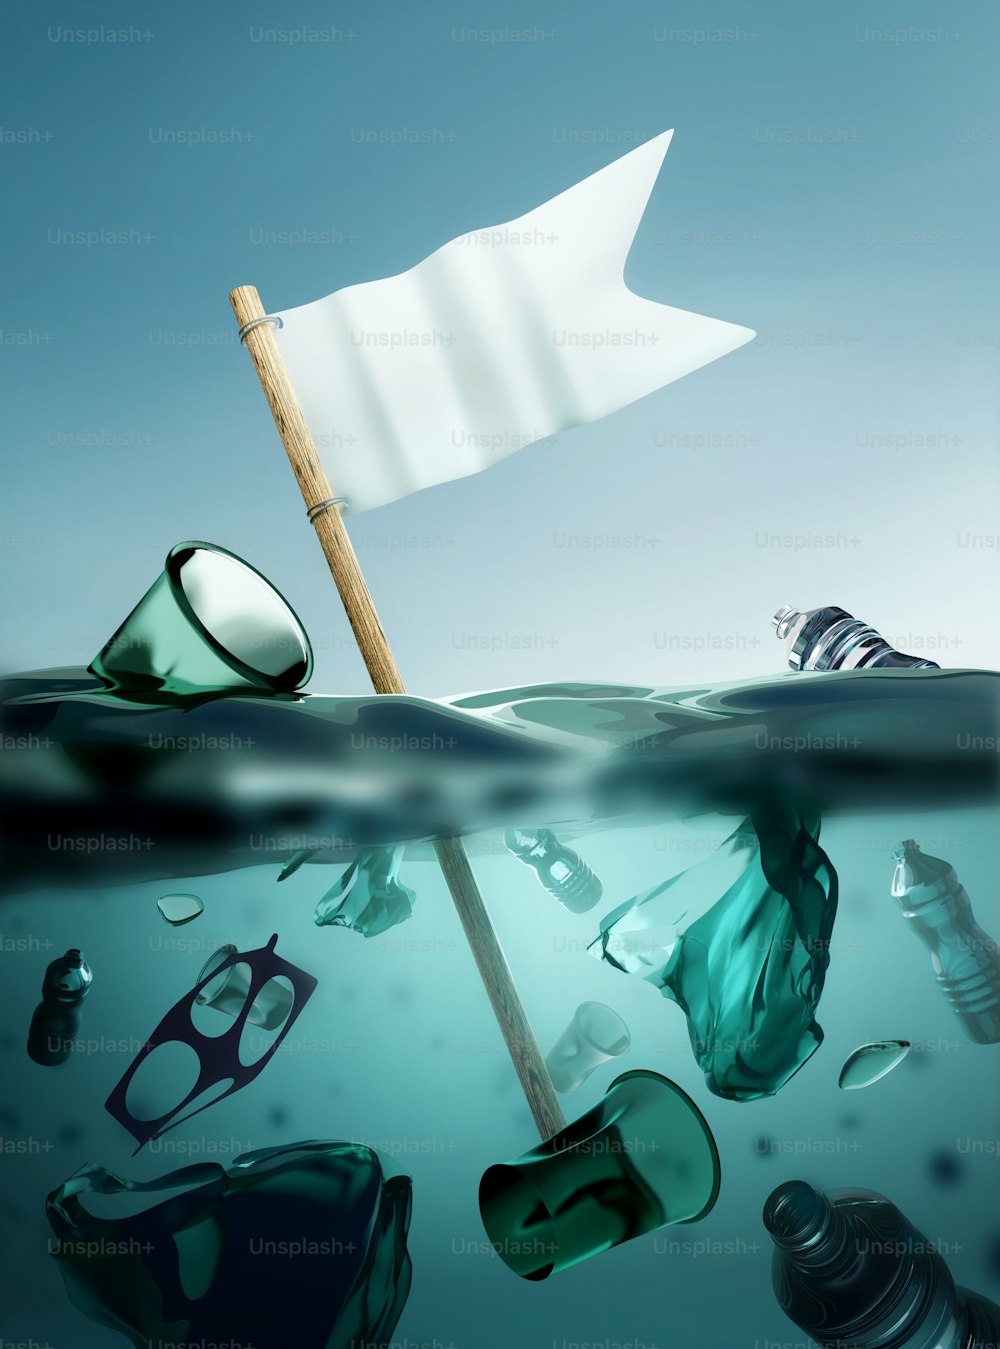 déchets plastiques flottant en pleine mer avec un drapeau blanc de reddition. Crise de la pollution plastique climatique et environnementale. Illustration 3D.